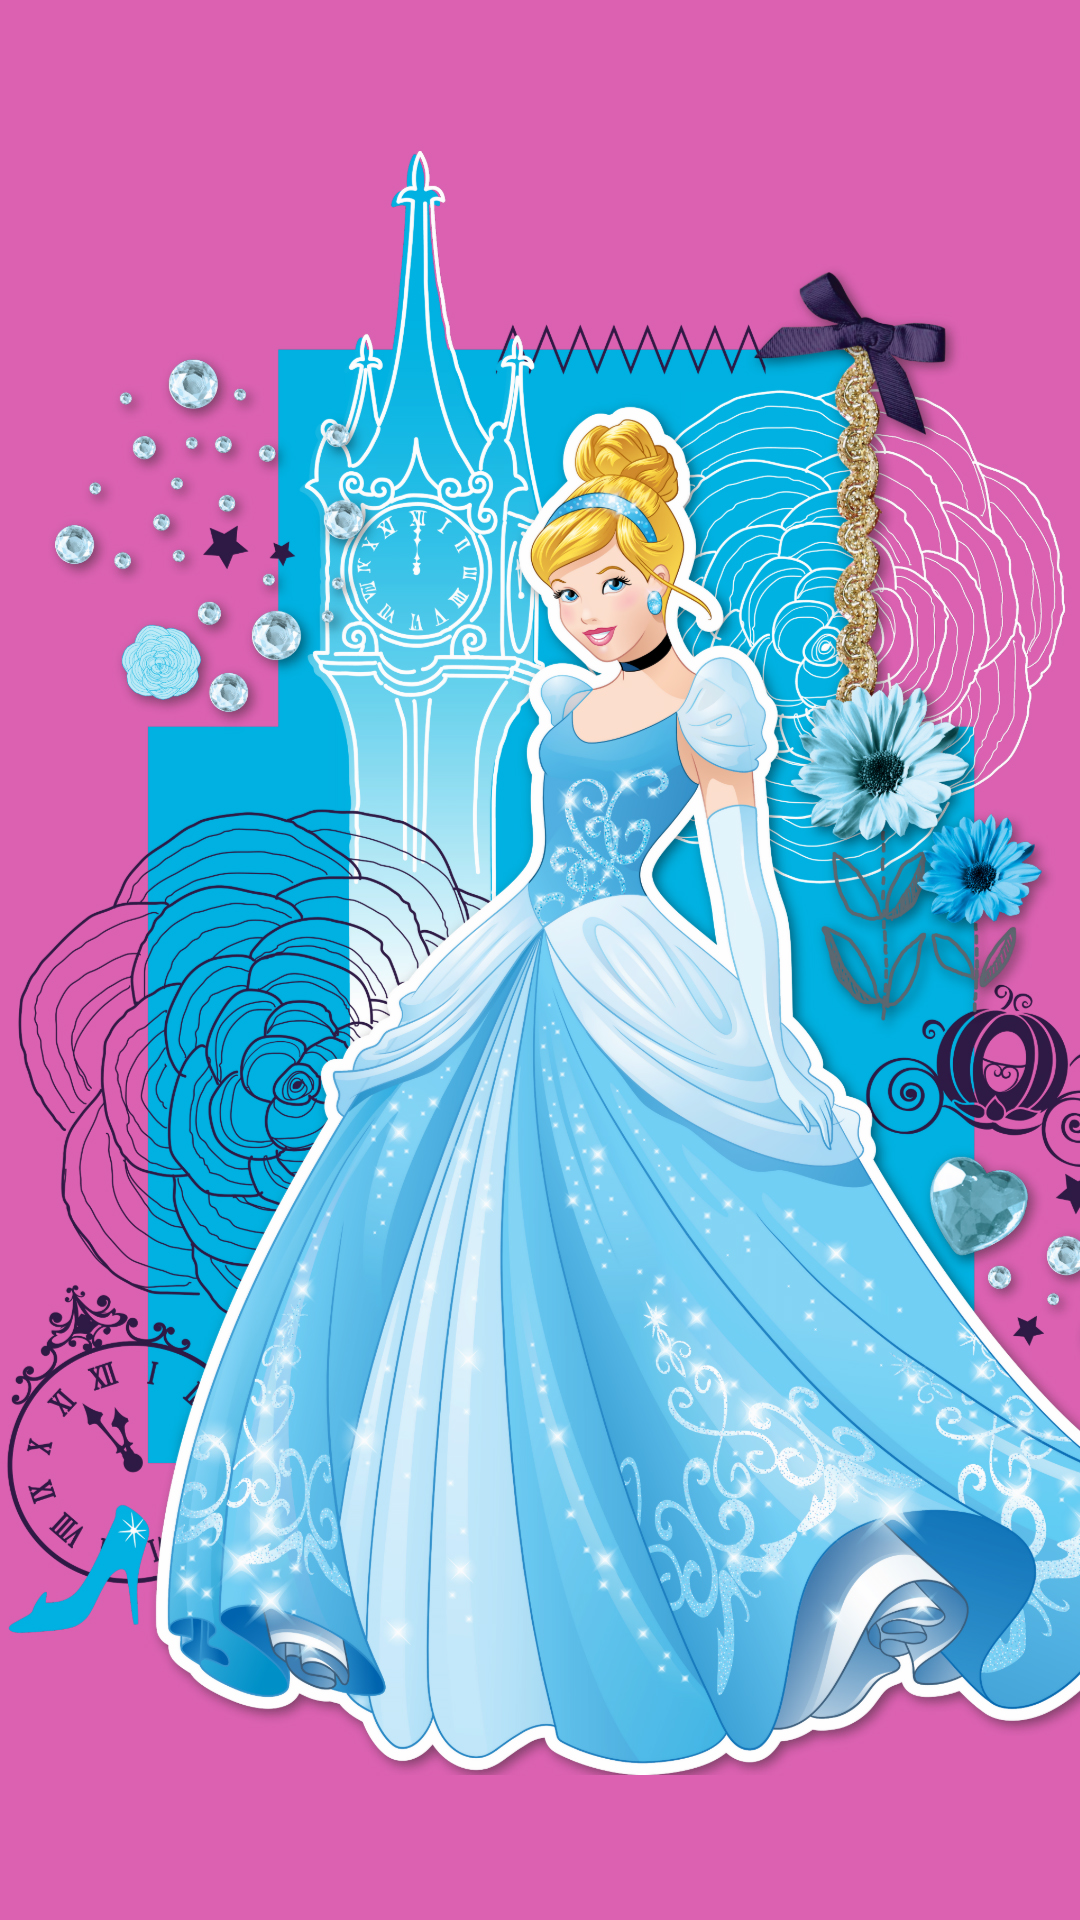 50+] Disney Princess Wallpaper Images - WallpaperSafari